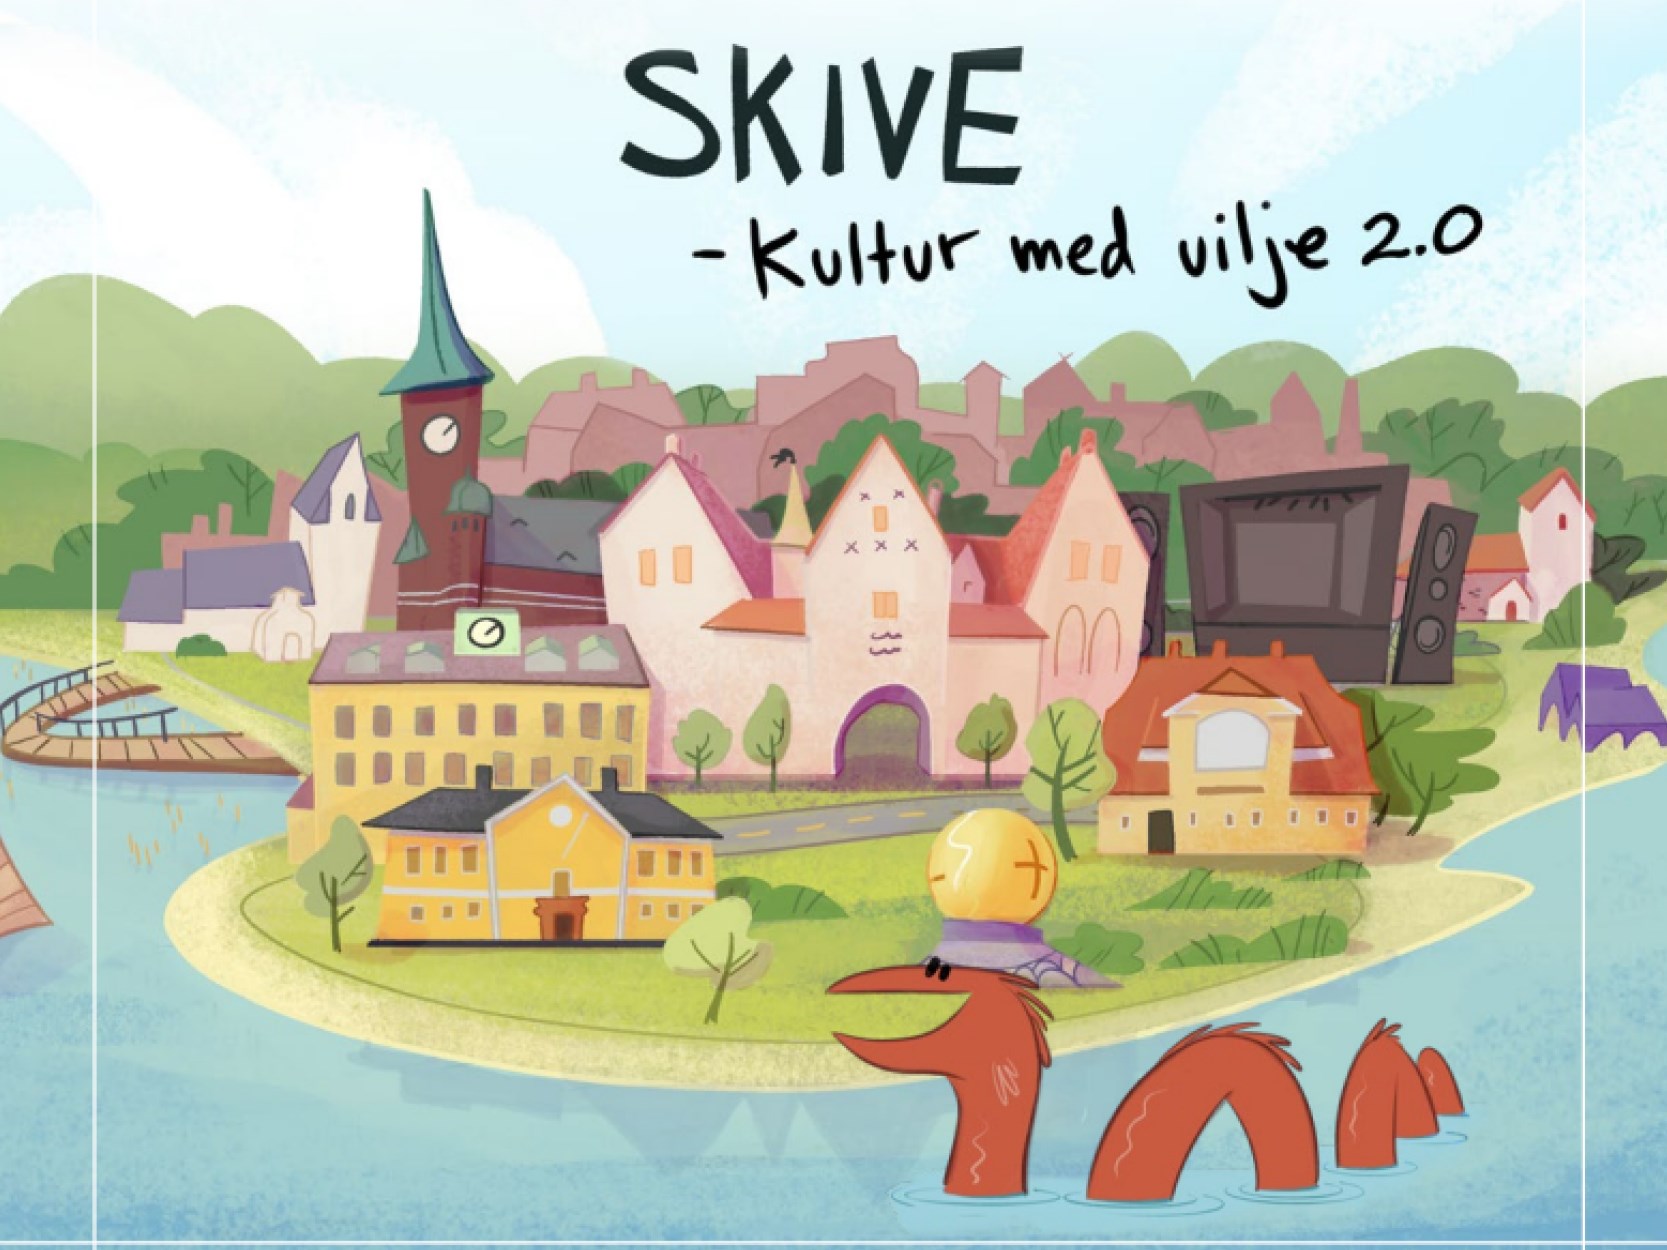 Billede med illustration af Skiveegnen og de store kulturelle institutioner herunder Skive Festival, Spøttrup Borg, kirkerne, Fur og Jenle